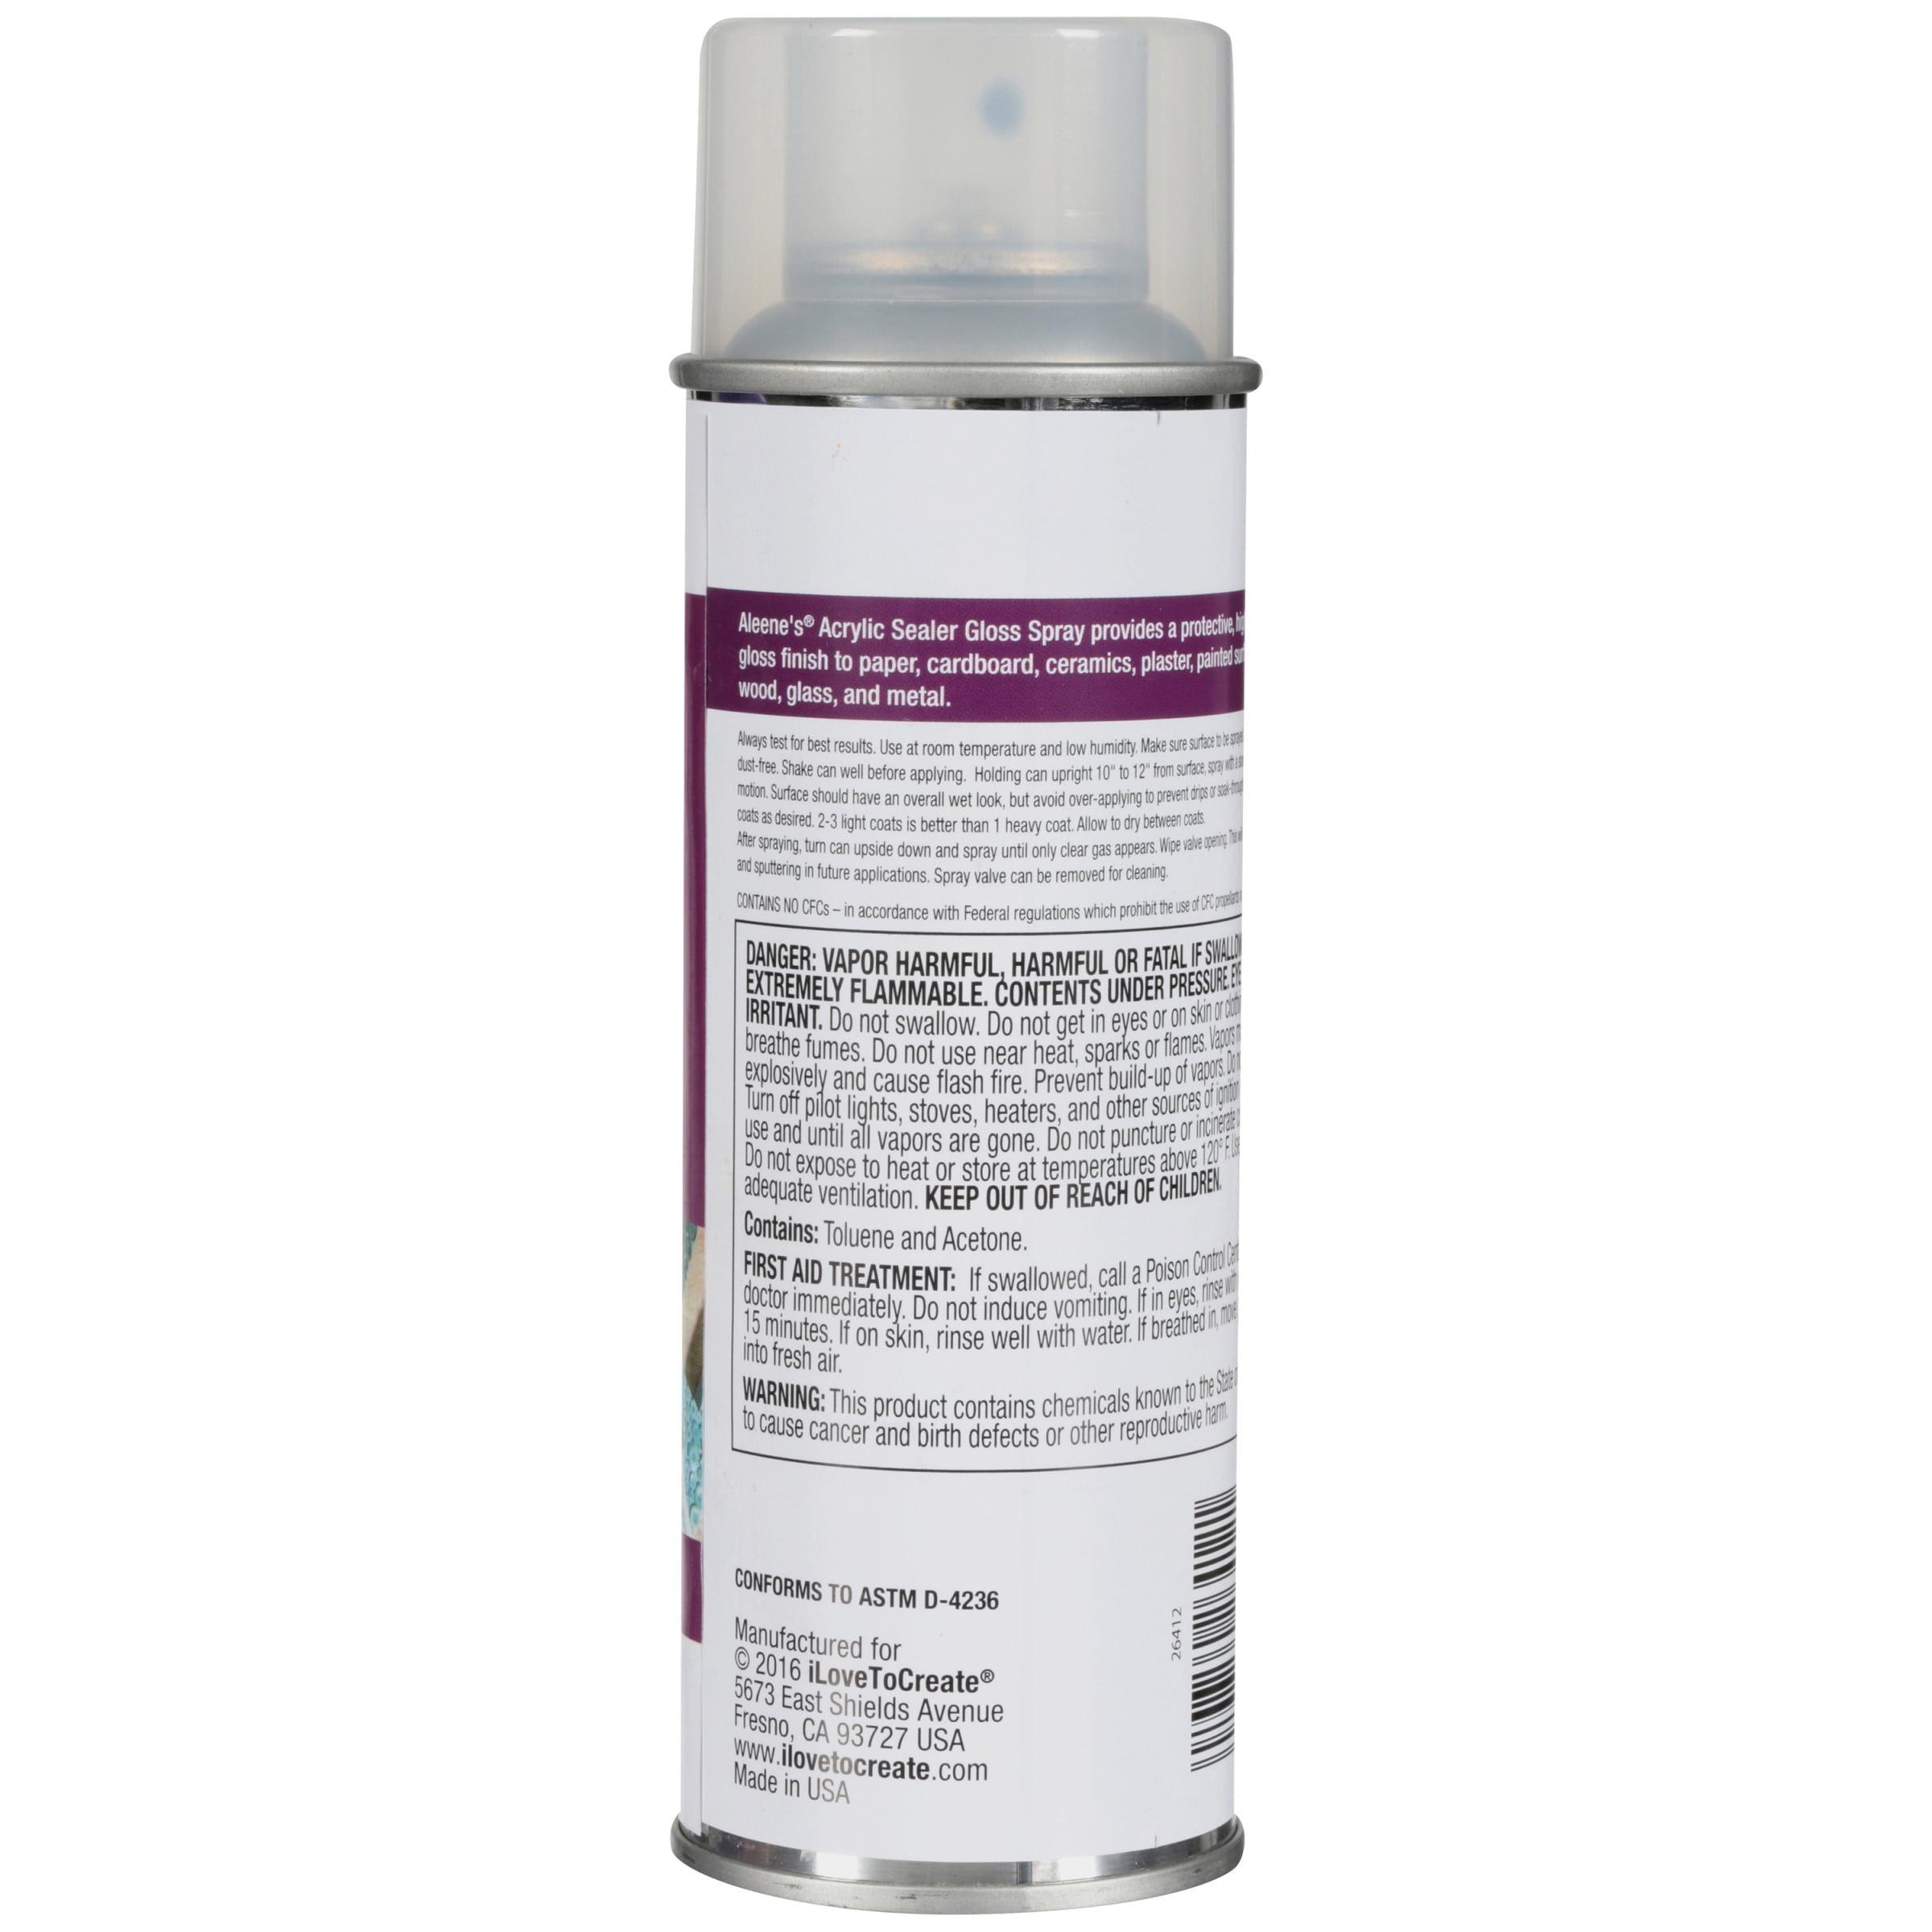 Aleene's Clear Acrylic Spray Sealer, Gloss 6 oz